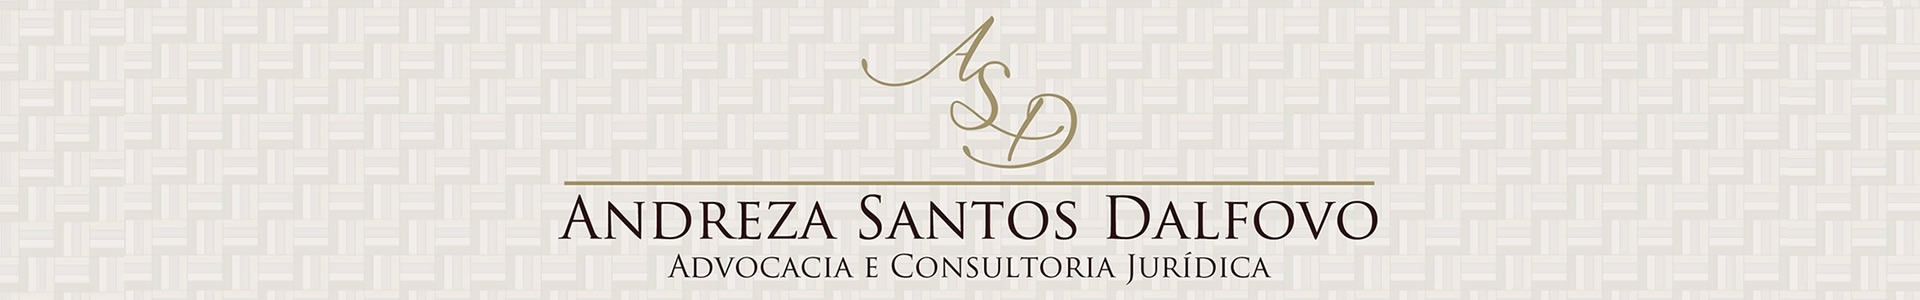 ASD - Andreza Santos Dalfovo - Advocacia e Consultoria Jurídica em Joinville